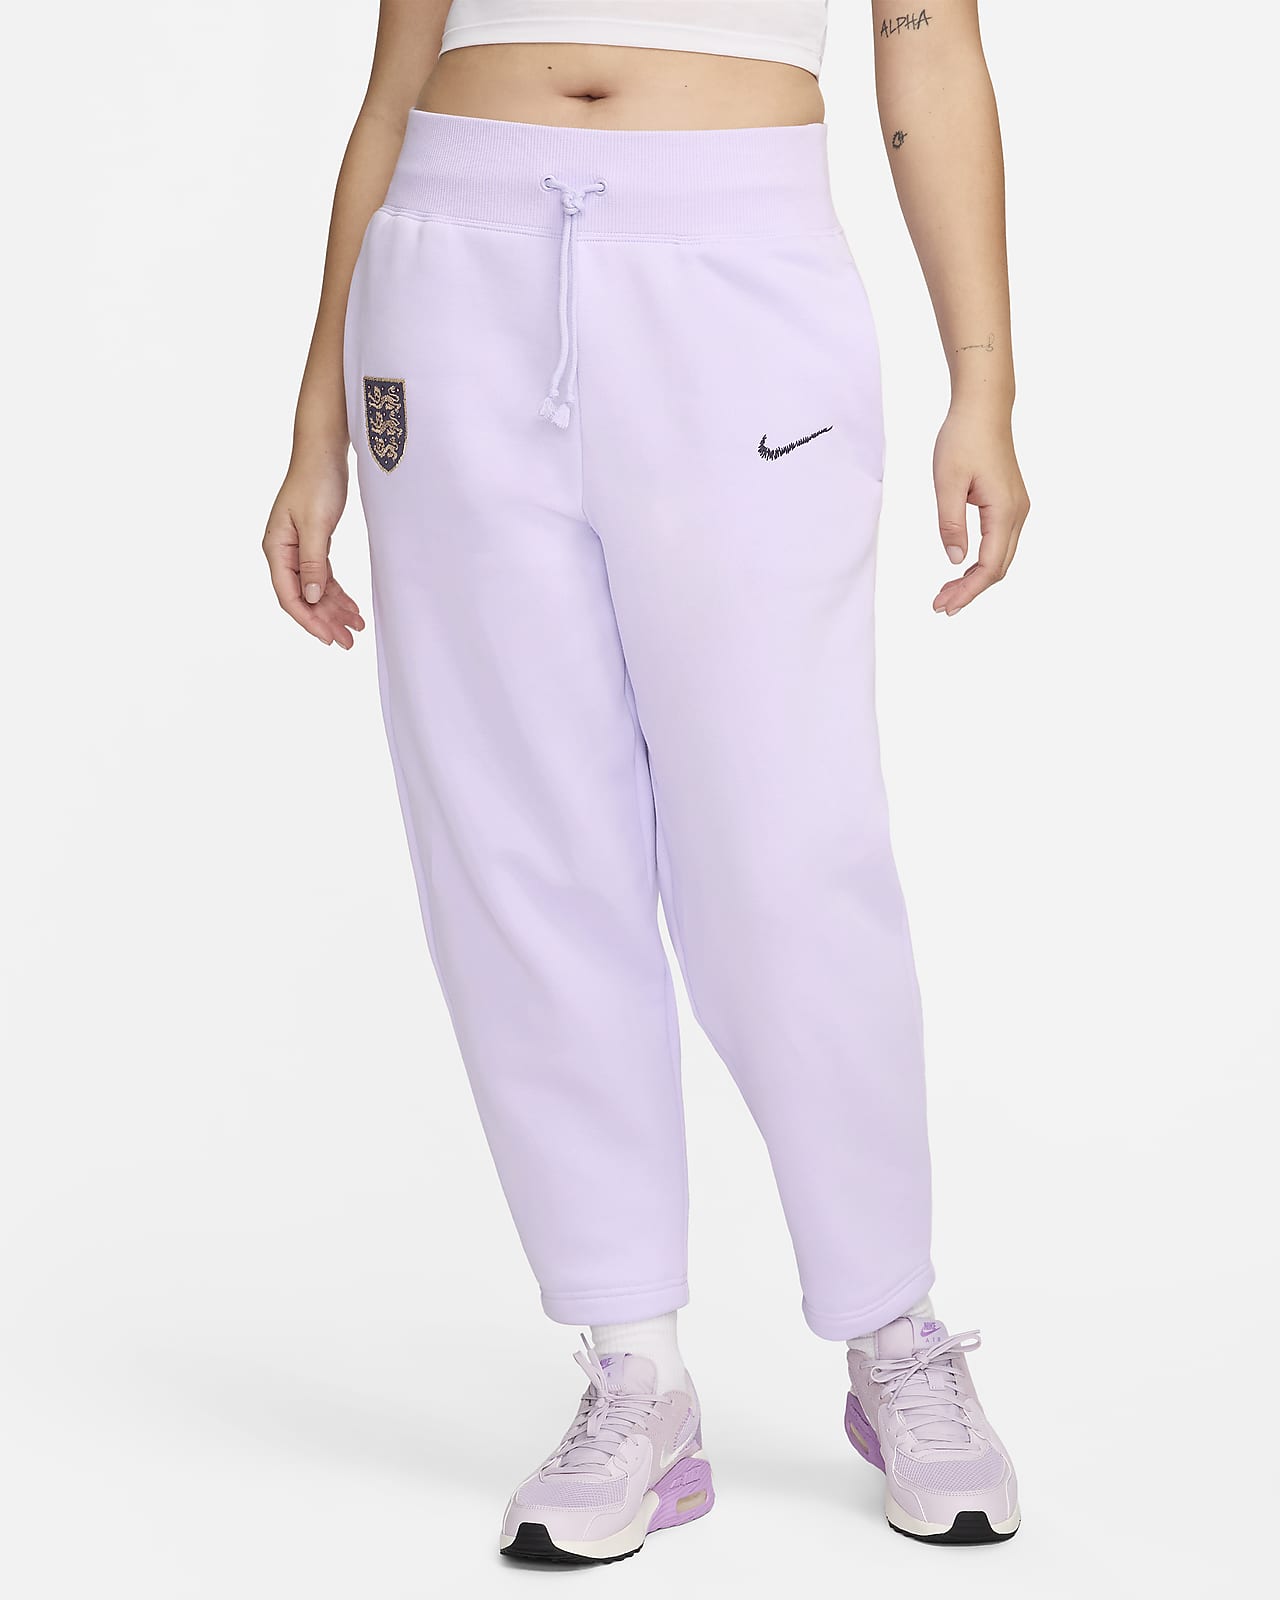 Damskie spodnie piłkarskie Nike z wysokim stanem Anglia Phoenix Fleece (duże rozmiary)